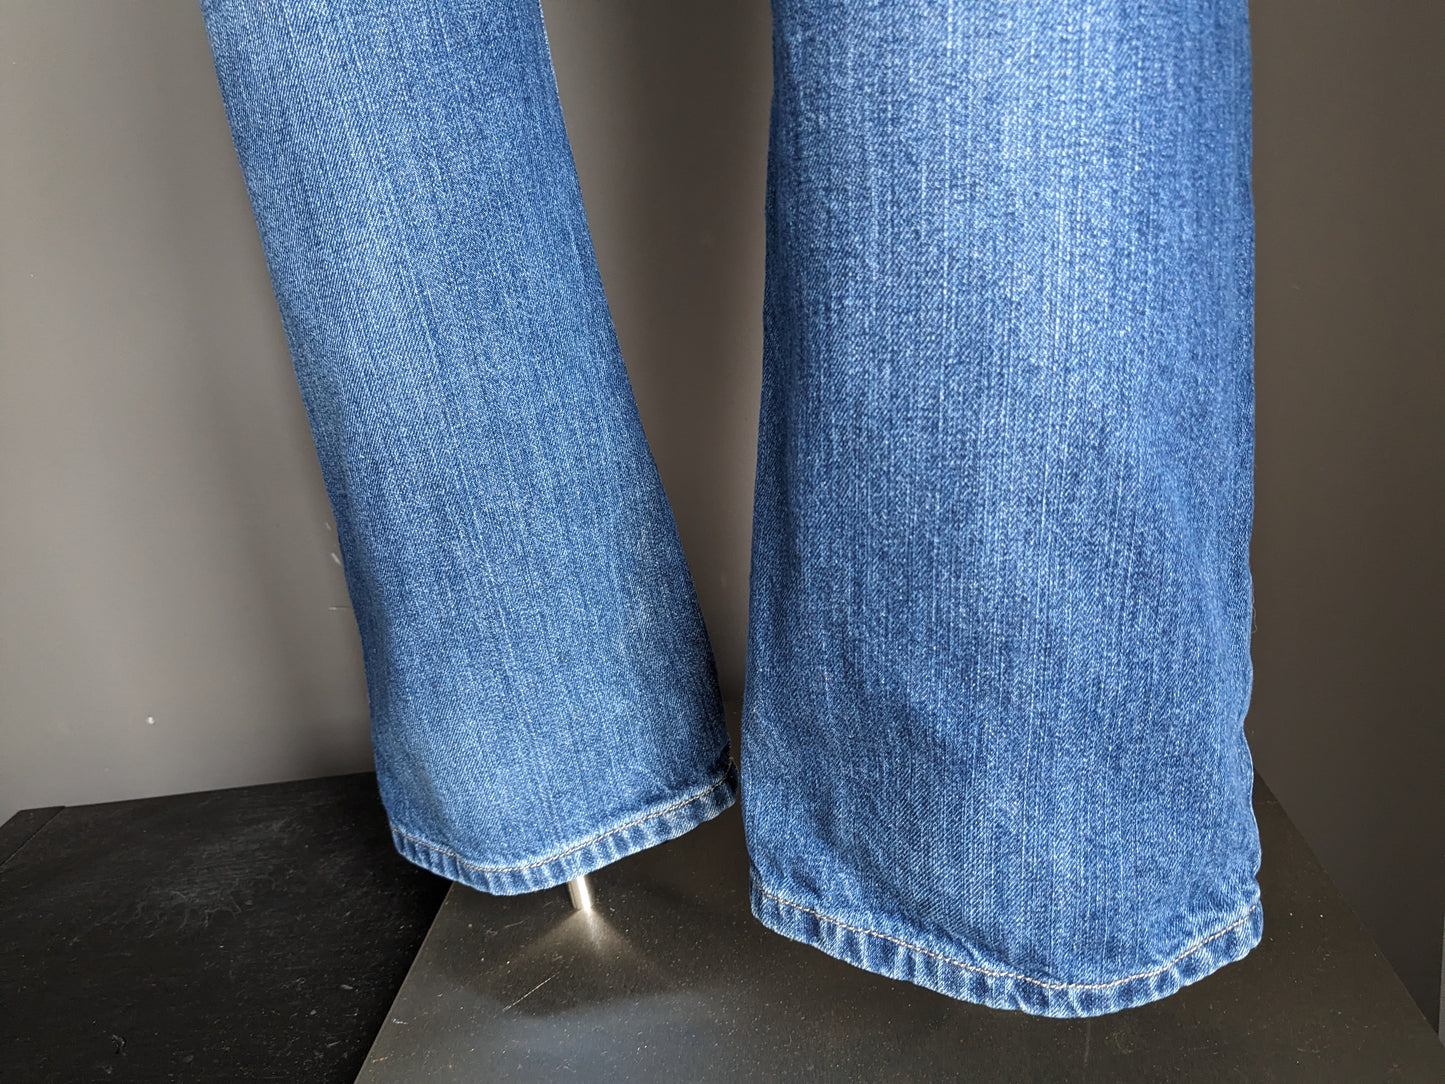 Big Star Jeans. Blau gefärbt. Geben Sie Rogar ein. Normale Passform. Größe W36 - L32.